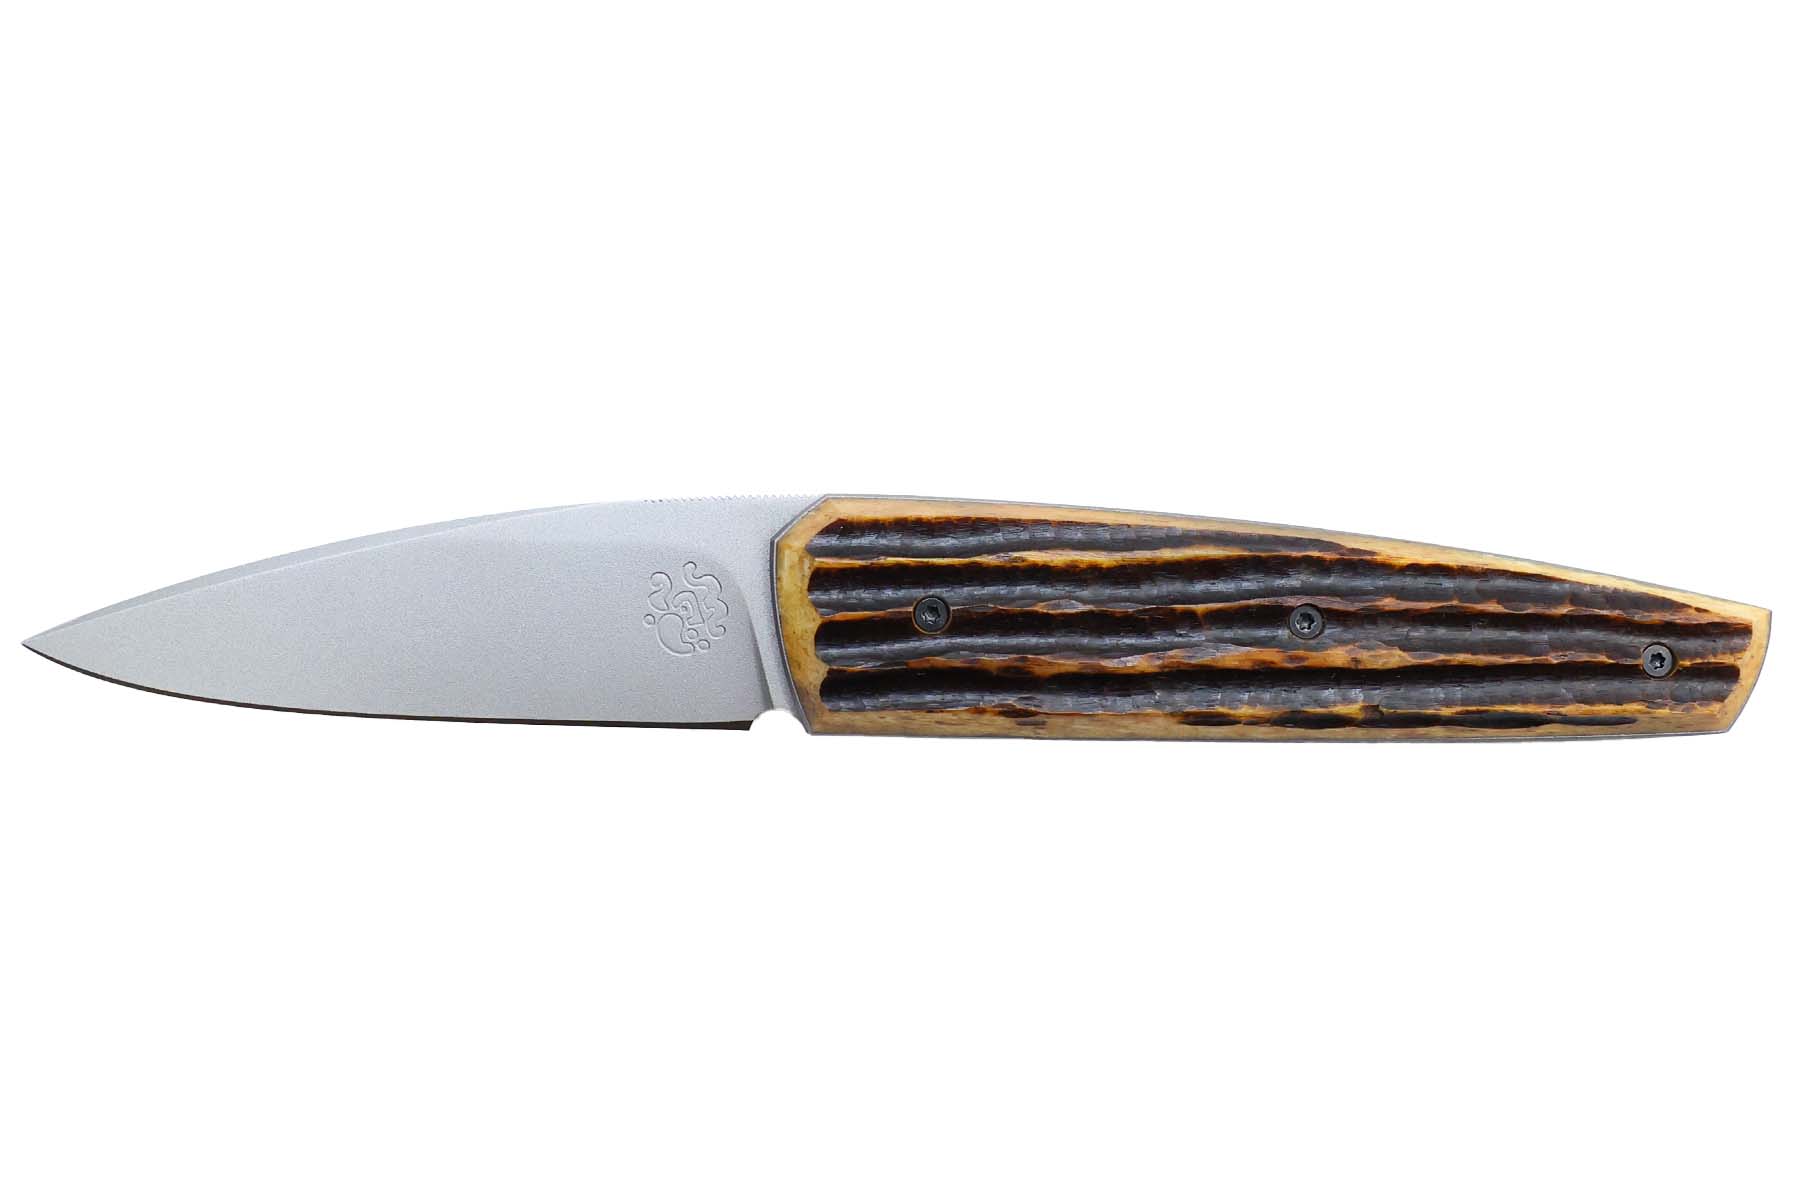 Couteau pliant artisanal "Forge Celtique" de Delbart fabrice - Os cerfé